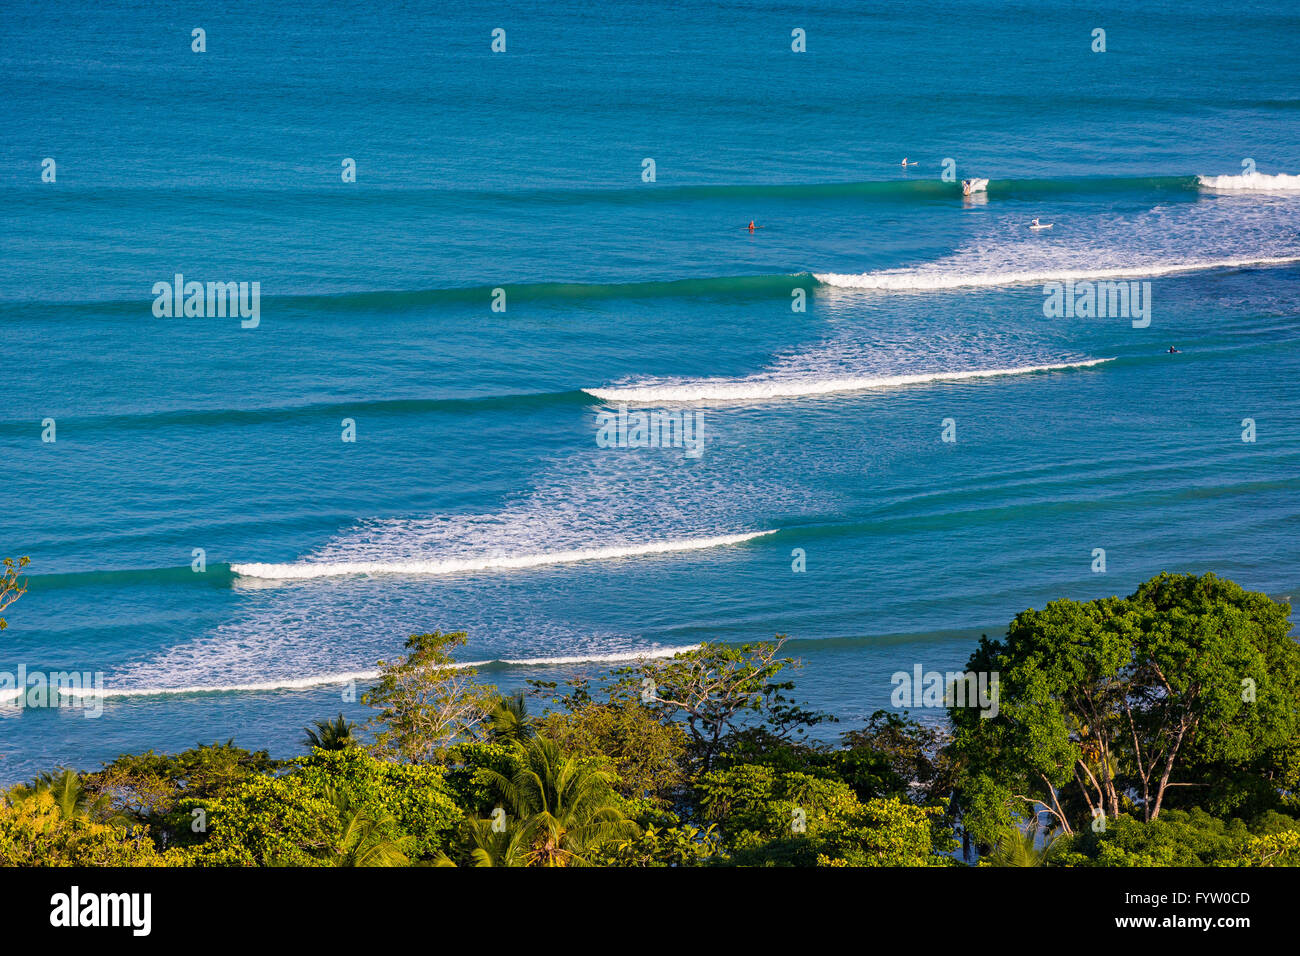 Península de Osa, Costa Rica - Océano Pacífico olas rompiendo en pan dulce, la playa y el bosque lluvioso. Foto de stock